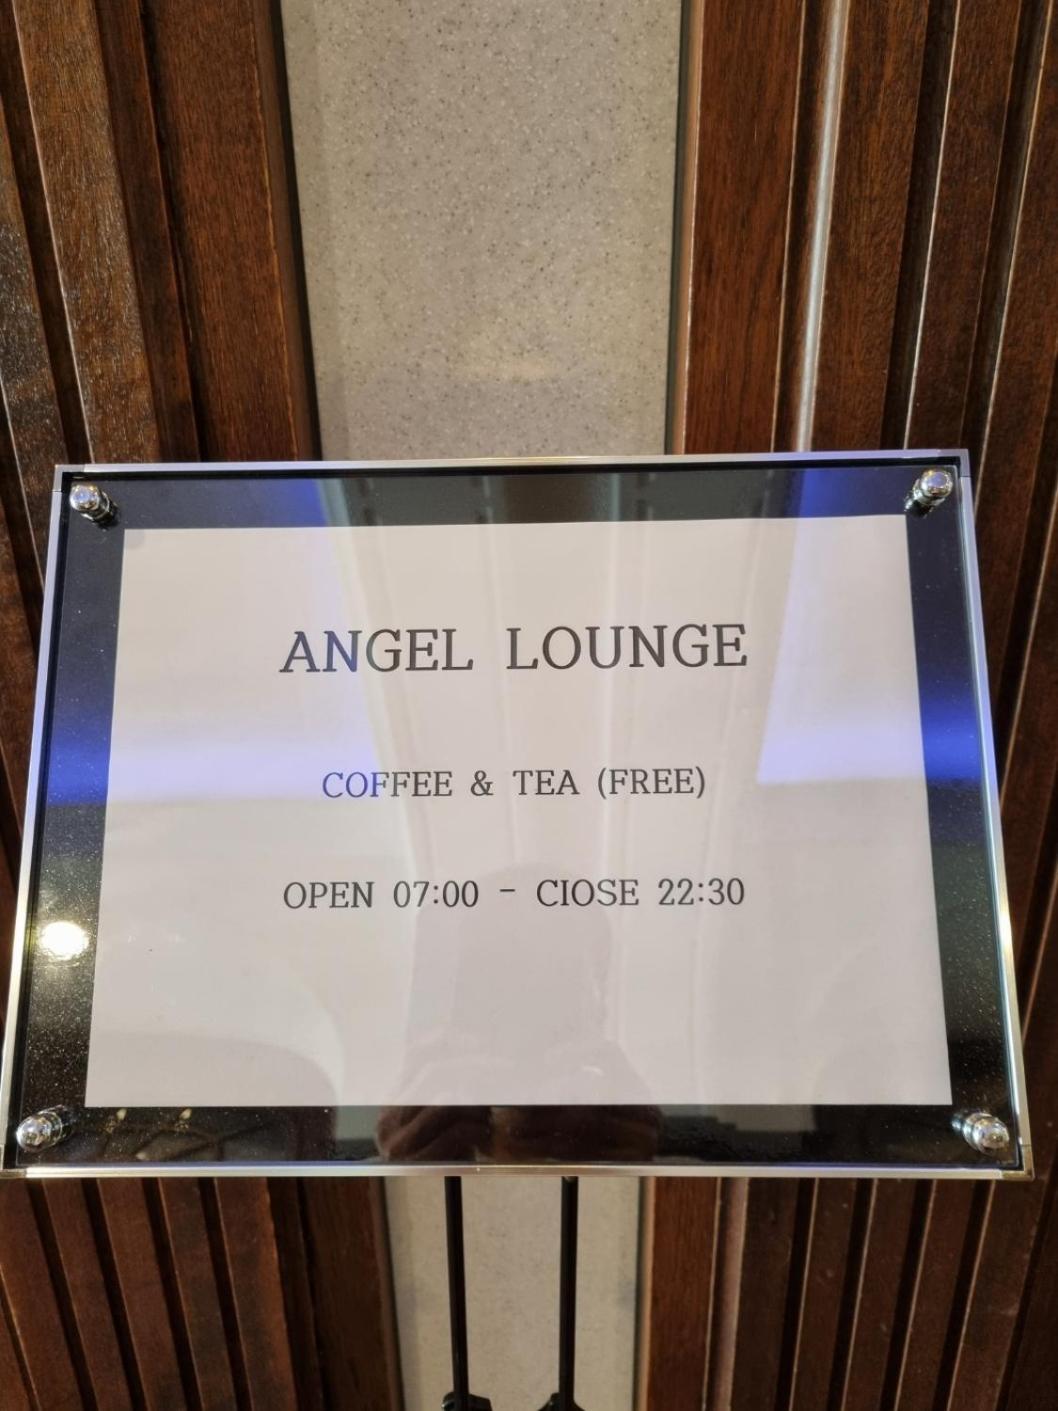 Angel Hotel Пусан Экстерьер фото